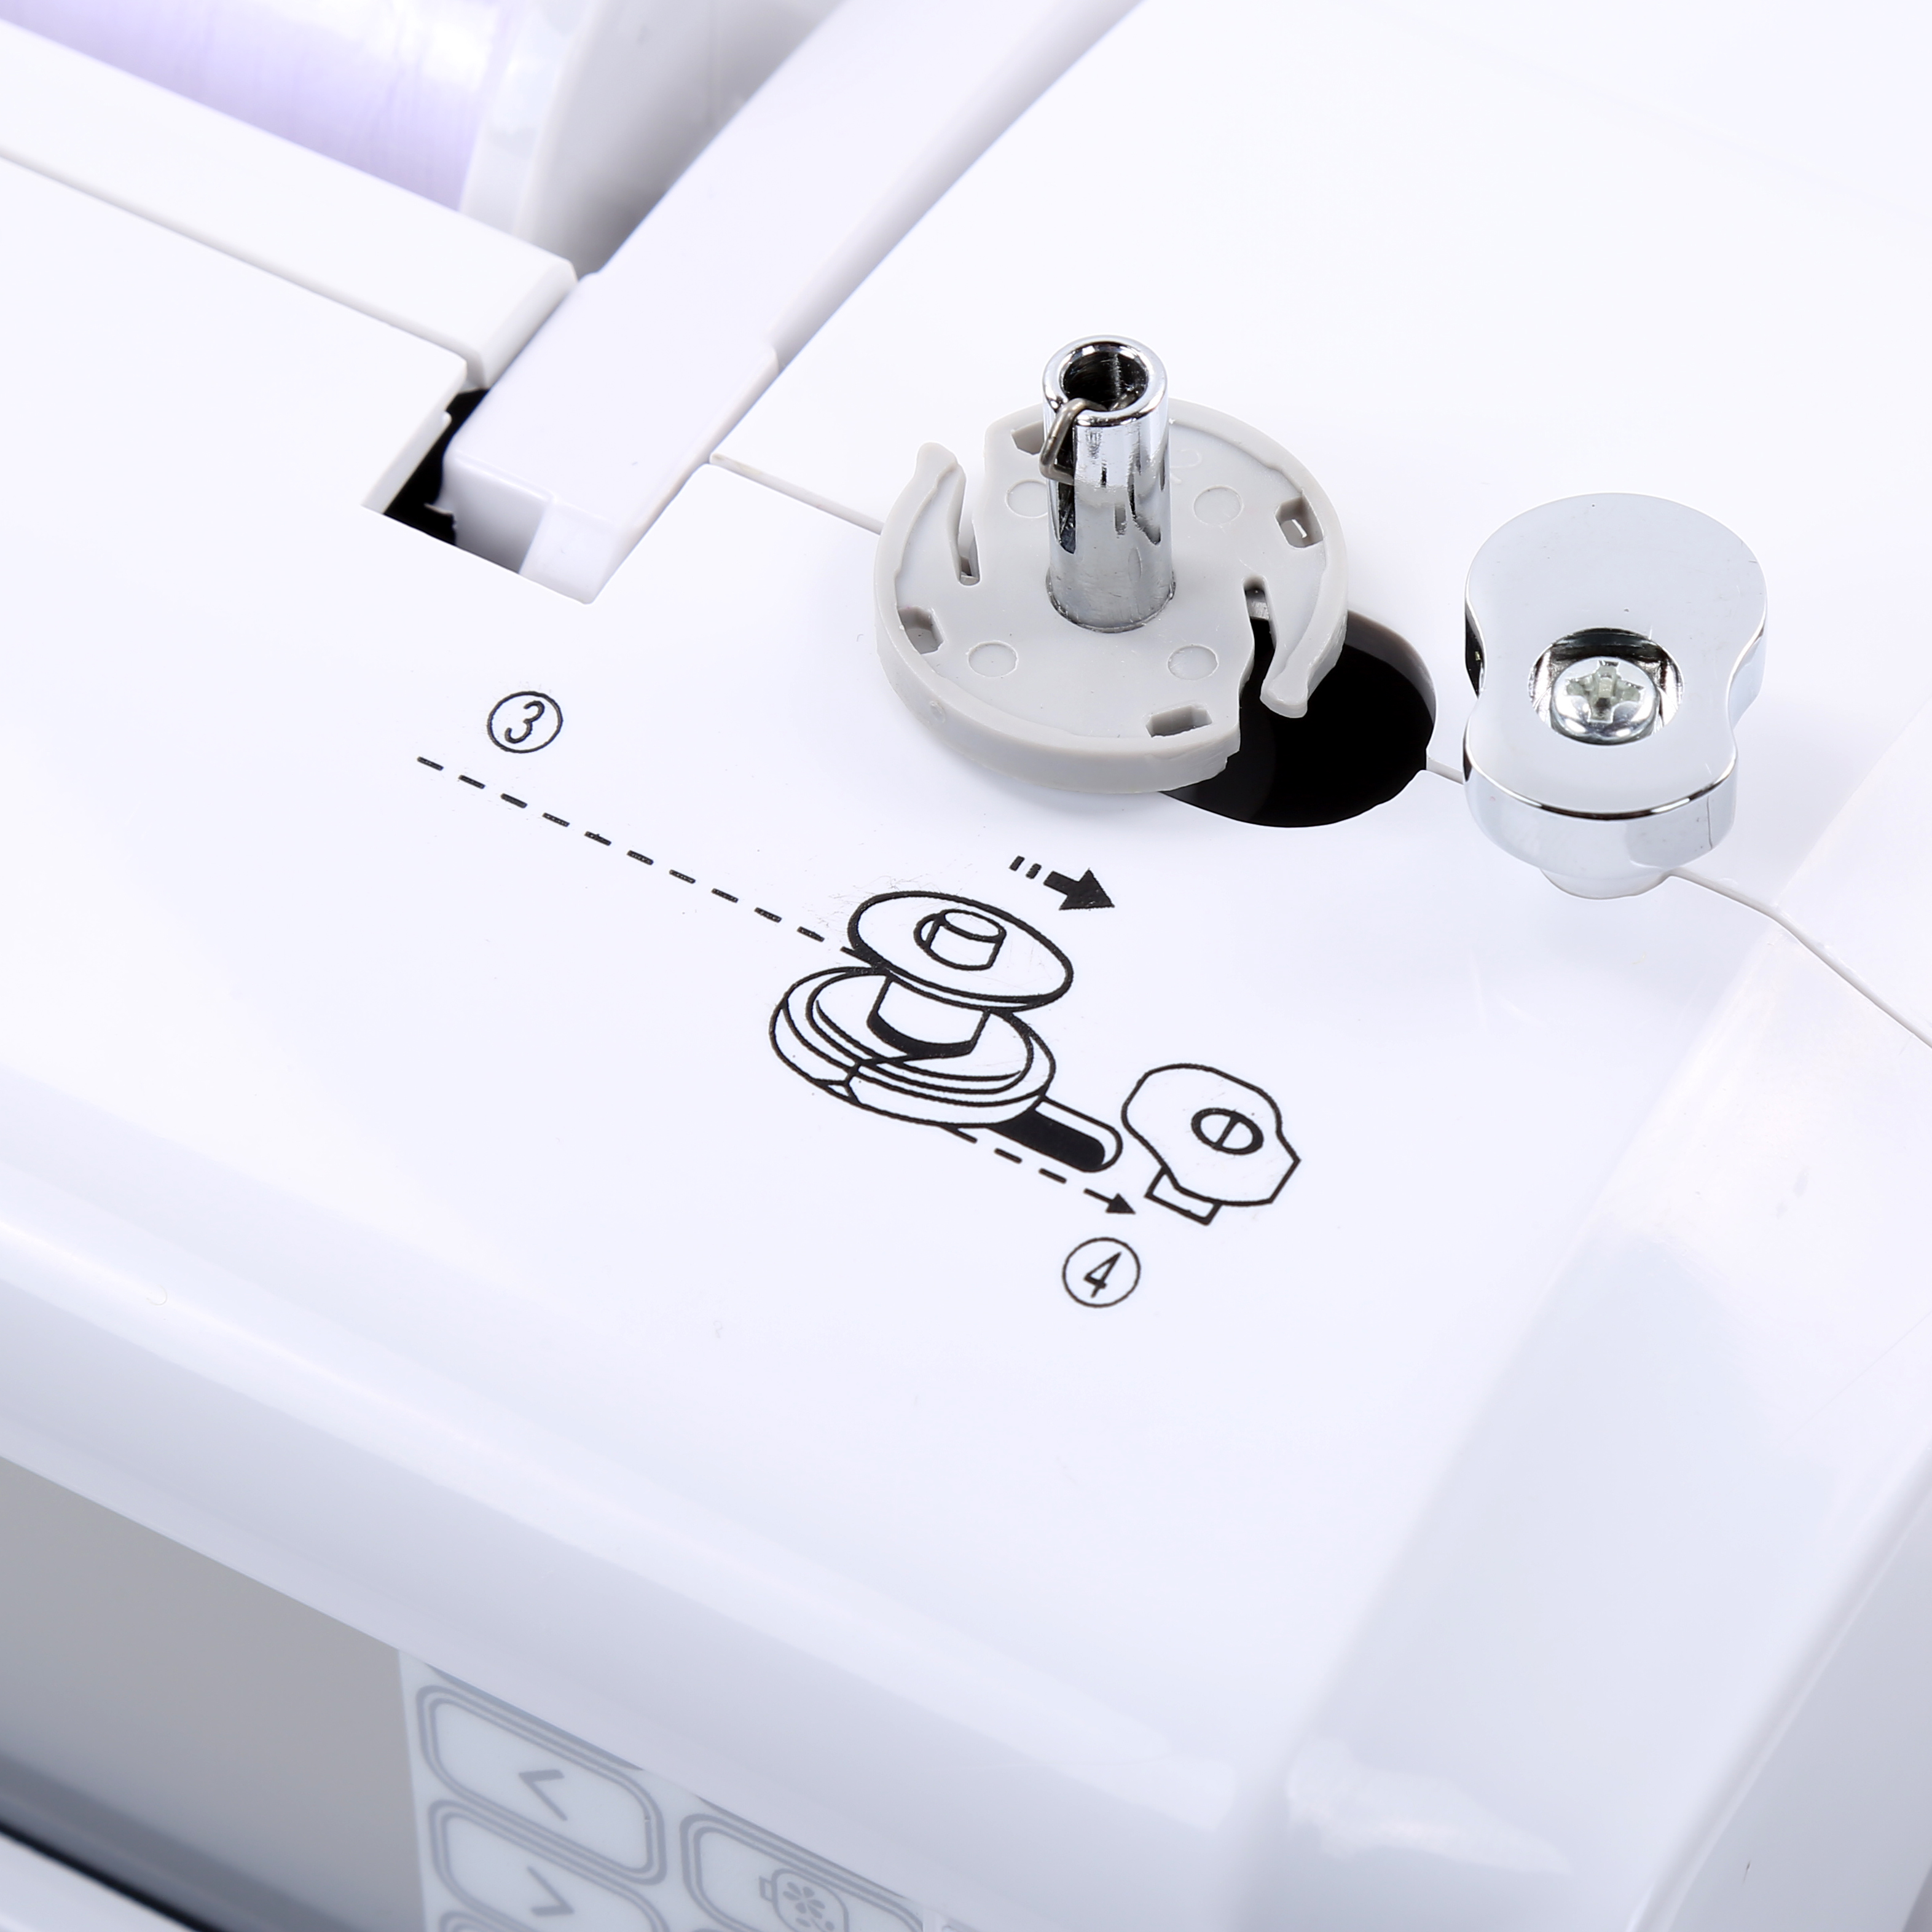 Bai дешевая цена многофункциональная автоматическая бытовая домашняя вышивка швейная машина для компьютера